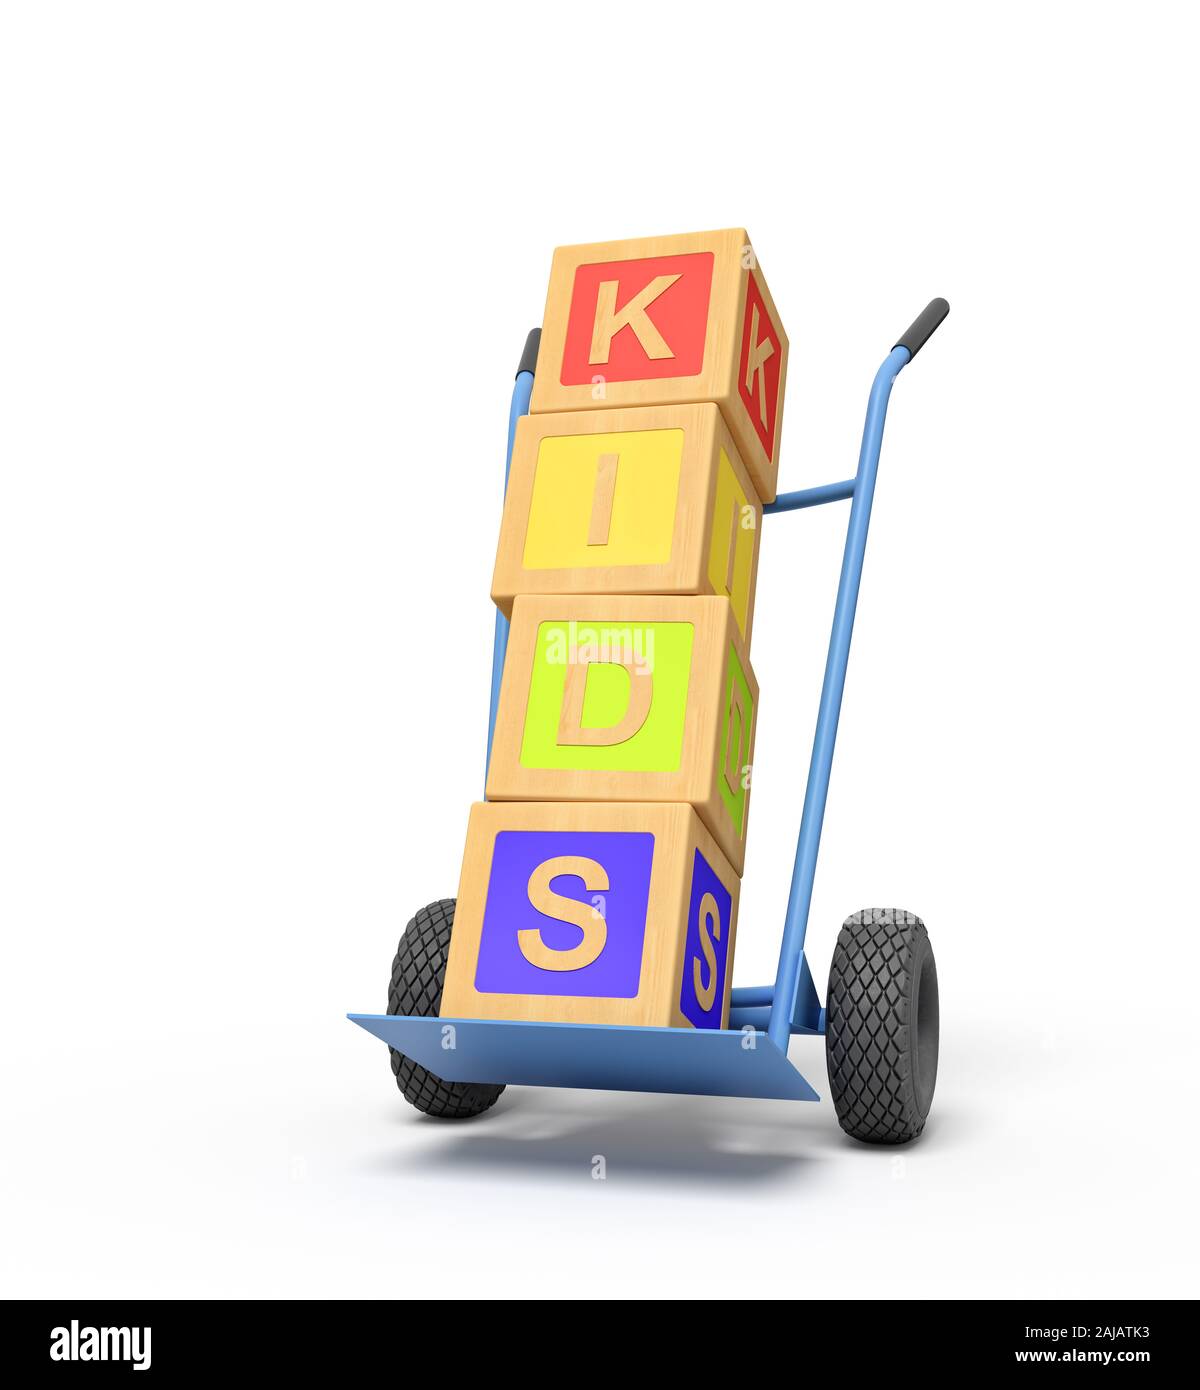 3D rendering de alfabeto colorido bloques de juguete mostrando 'PLAY' de firmar en una carretilla de mano. Arte Digital de objetos y materiales. Juegos y juguetes. Foto de stock